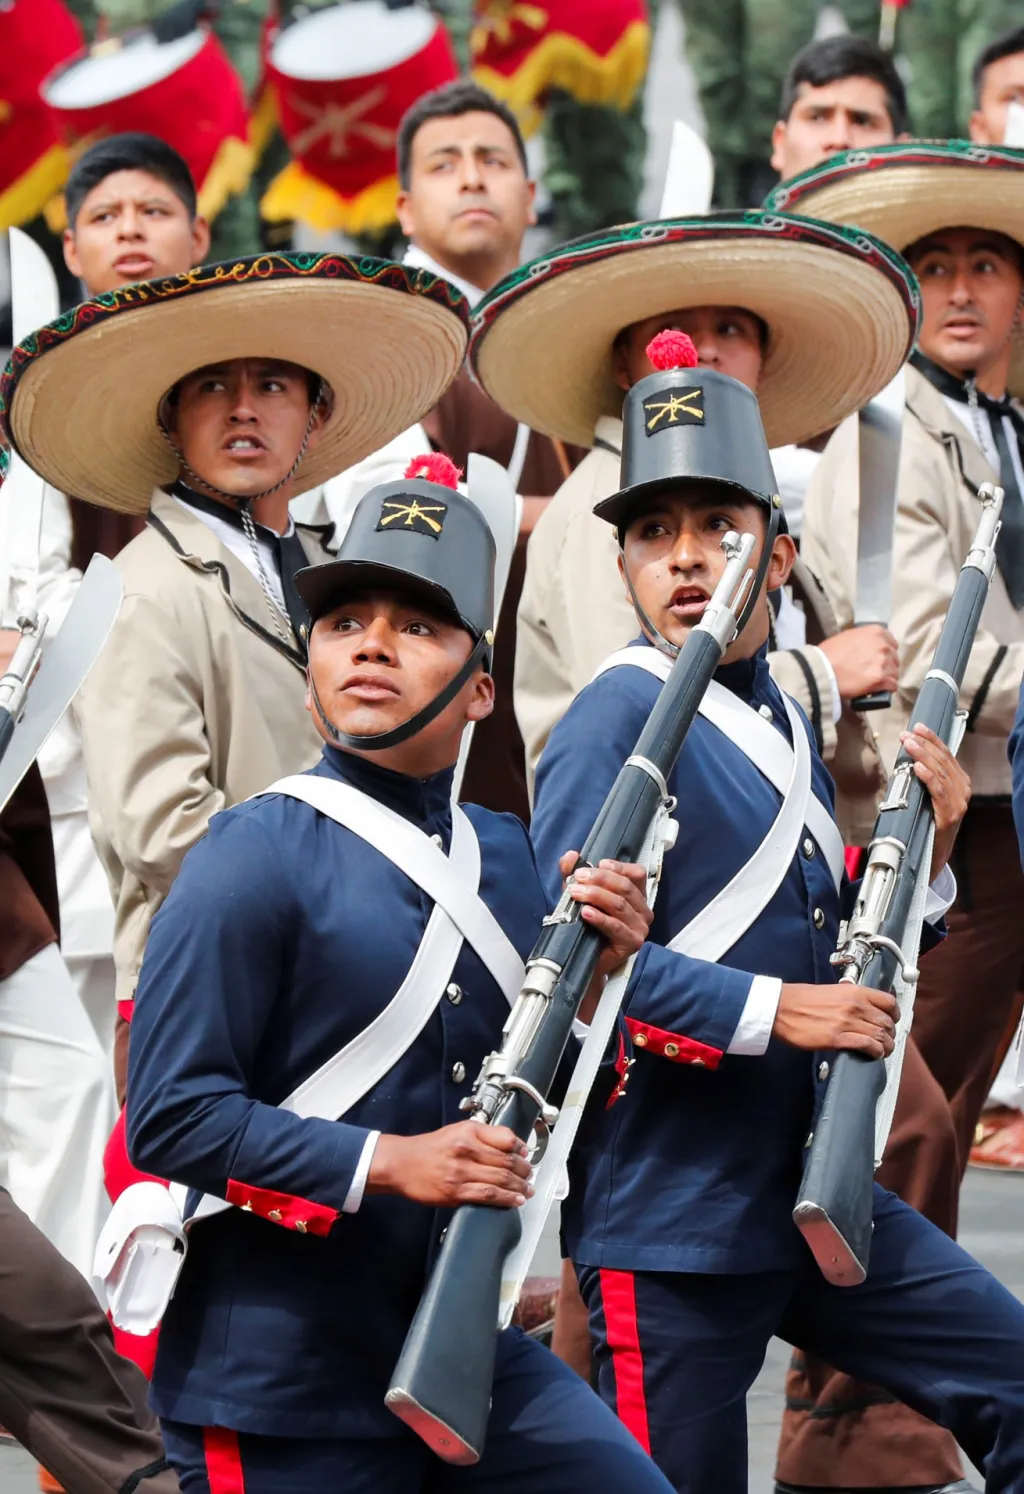 Historické jednotky k náměstí neodmyslitelně patří. V roce 1843 generál Antonio López de Santa Anna nechal vztyčit uprostřed náměstí památník na počest nezávislosti Mexika, který však nebyl dostavěn. Nakonec se ale stal symbolem náměstí a dal mu i jméno Zócalo